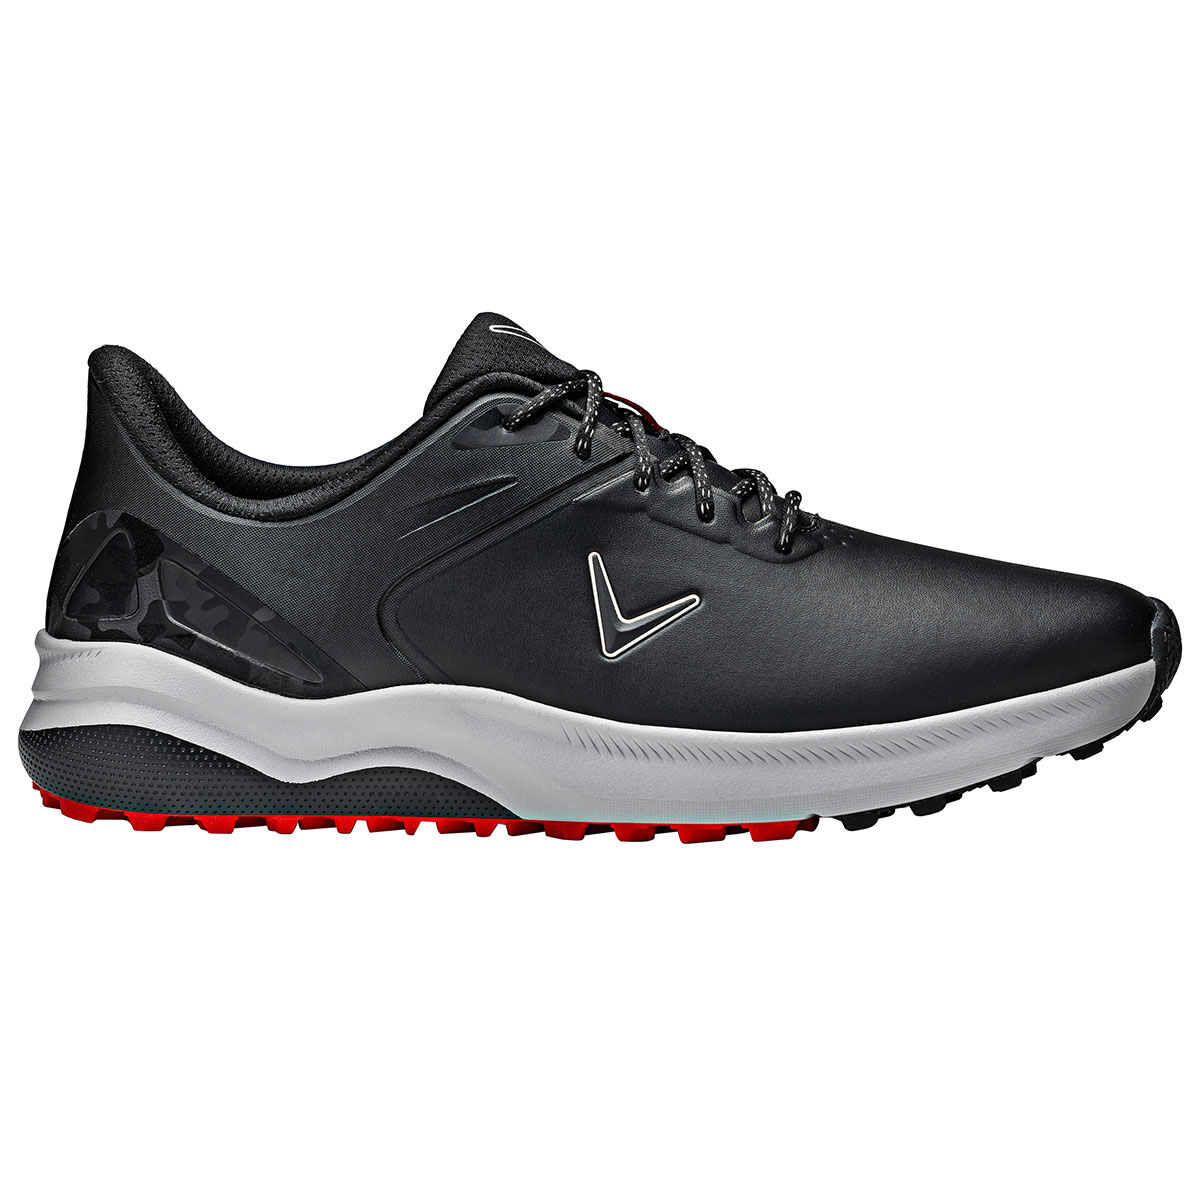 Callaway Golf Mens Black Waterproof Lazer Spikeless Golf Shoes, Size: 7 | American Golf von Callaway Golf